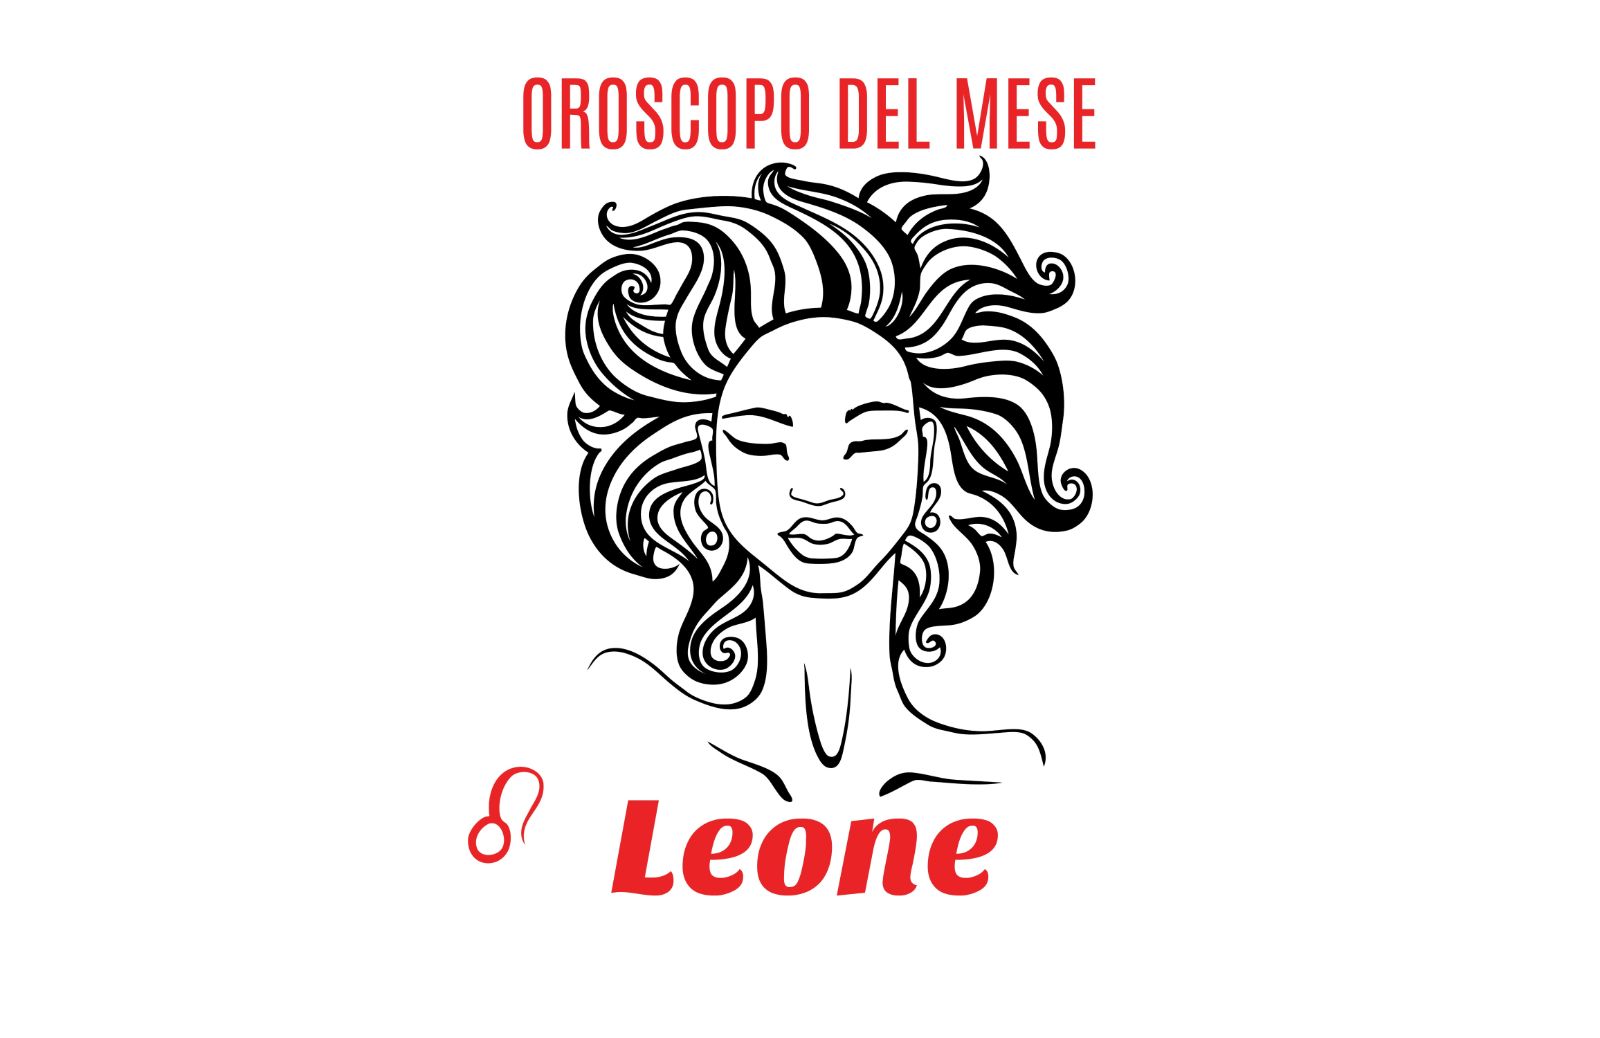 Oroscopo del mese: Leone - giugno 2020